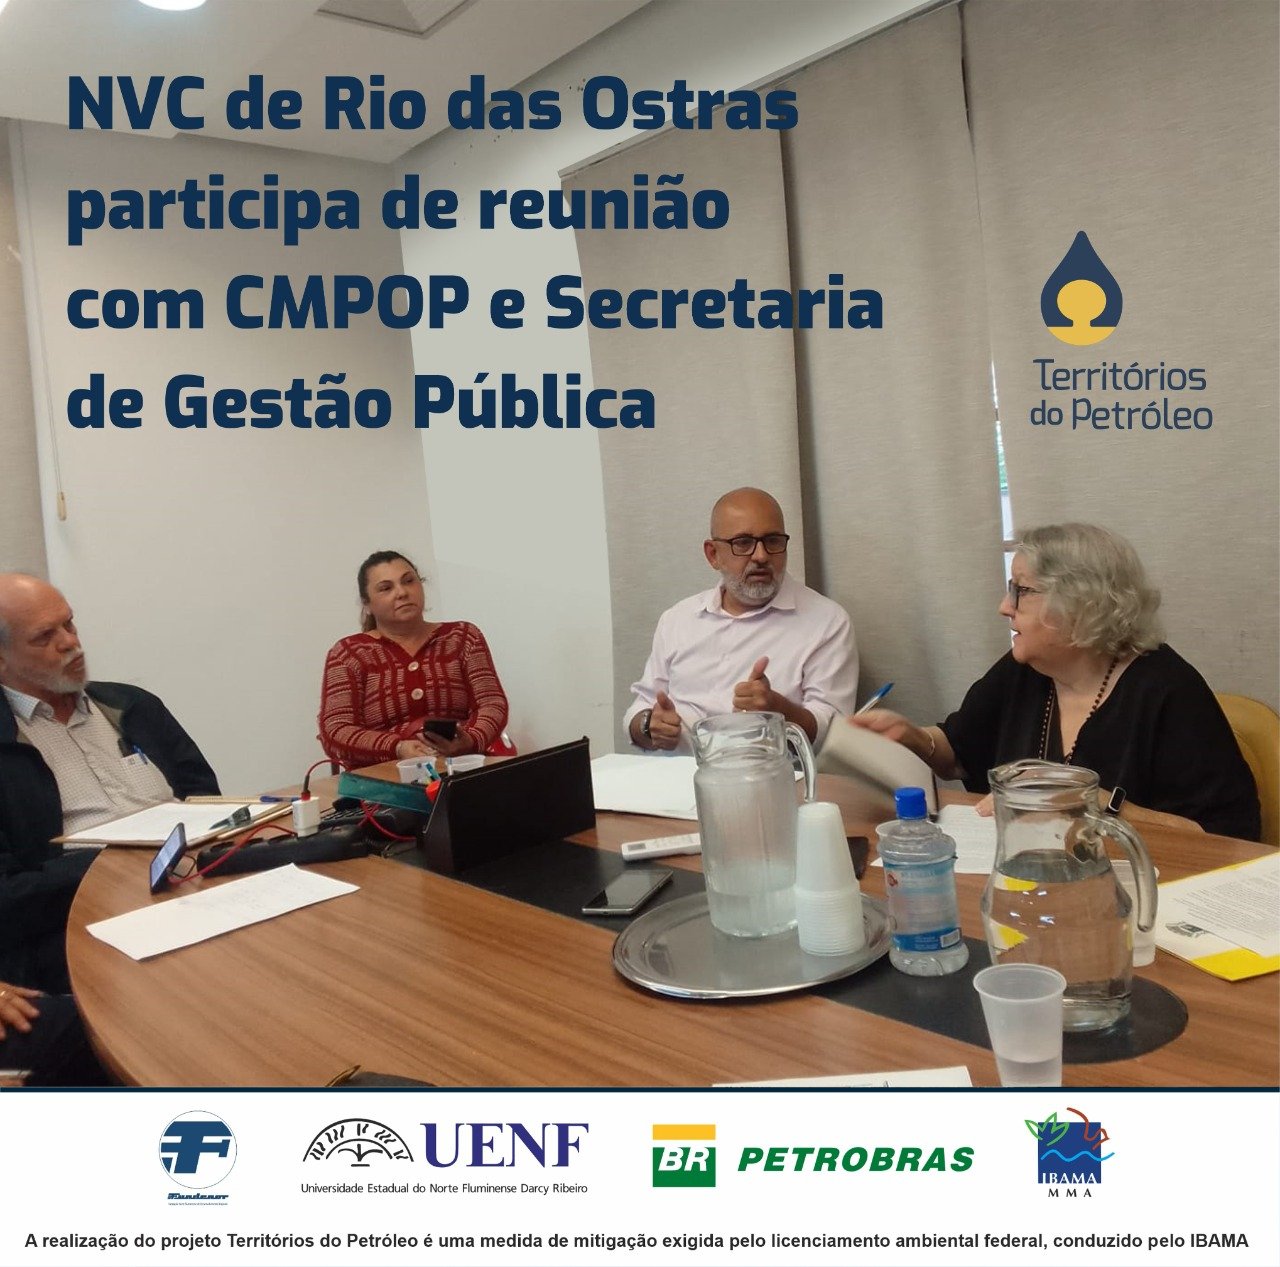 NVC de Rio das Ostras participa de reunião com CMPOP e Secretaria de Gestão Pública